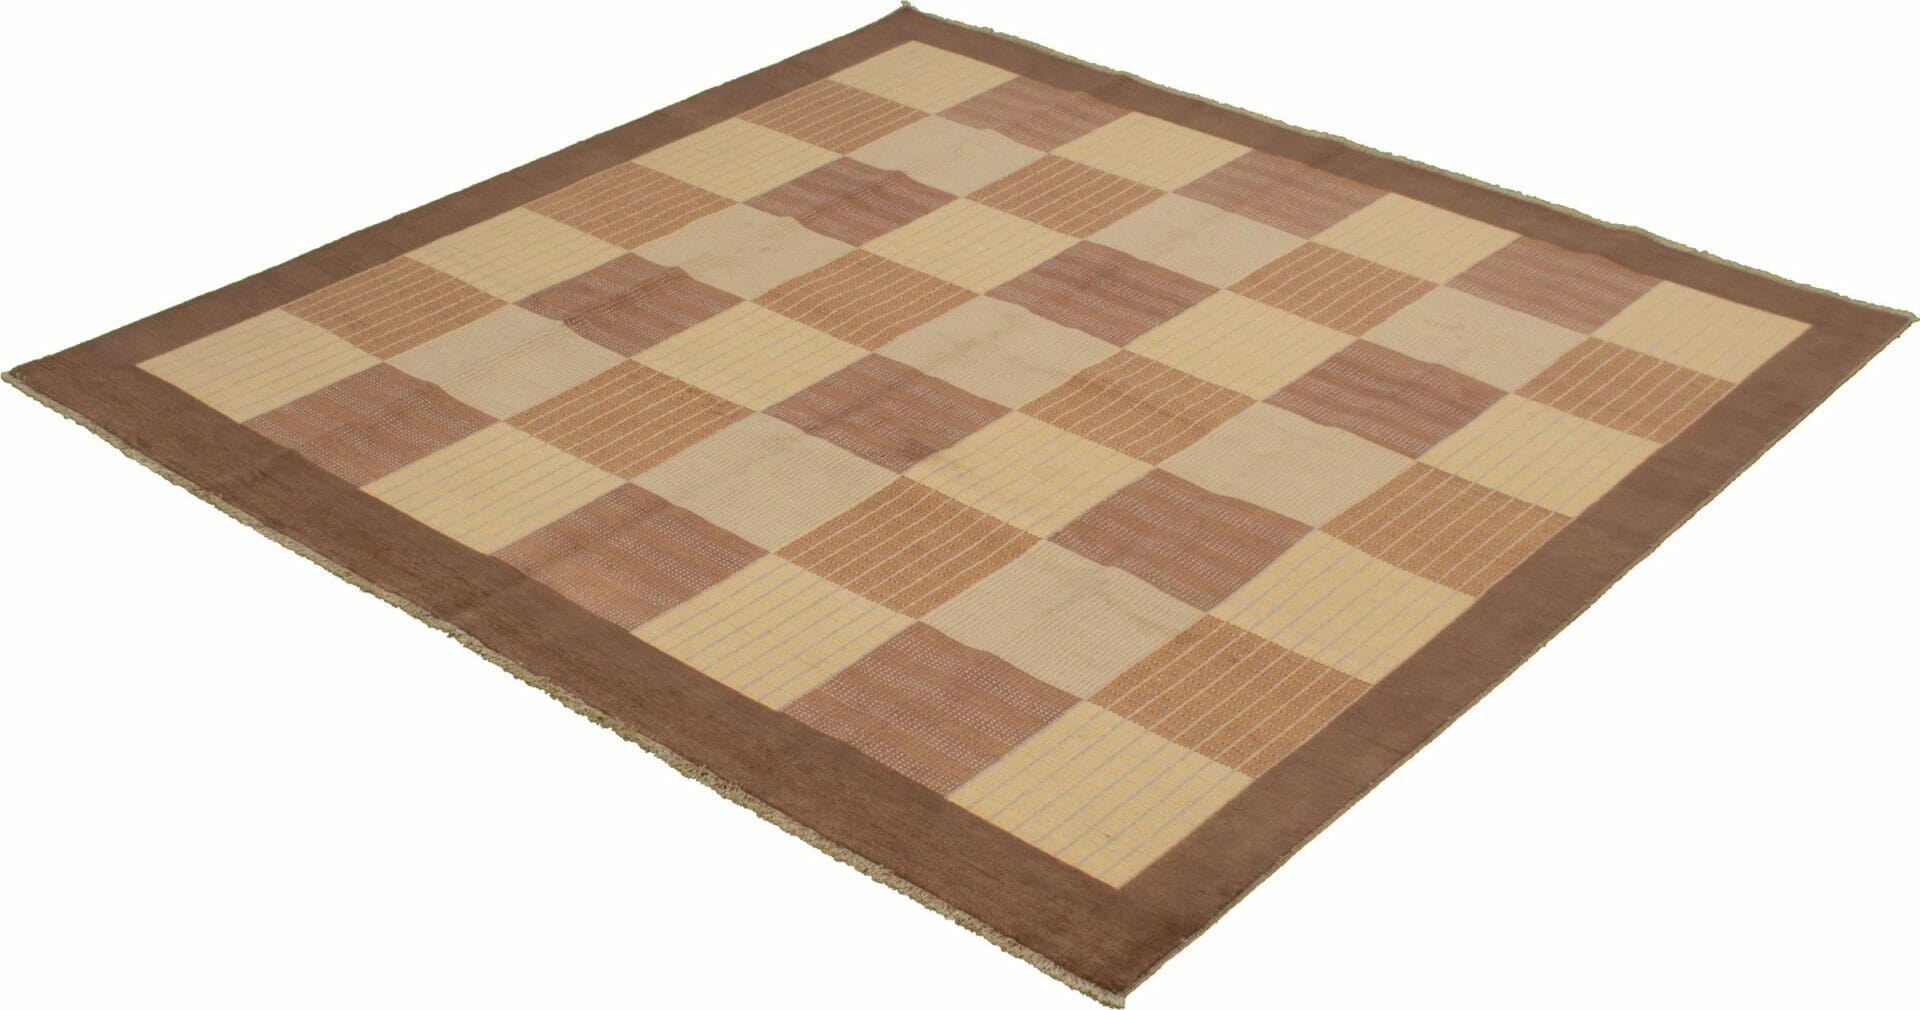 Een bruin en lichtbruin schaakbord op een witte achtergrond met vloerkleed.